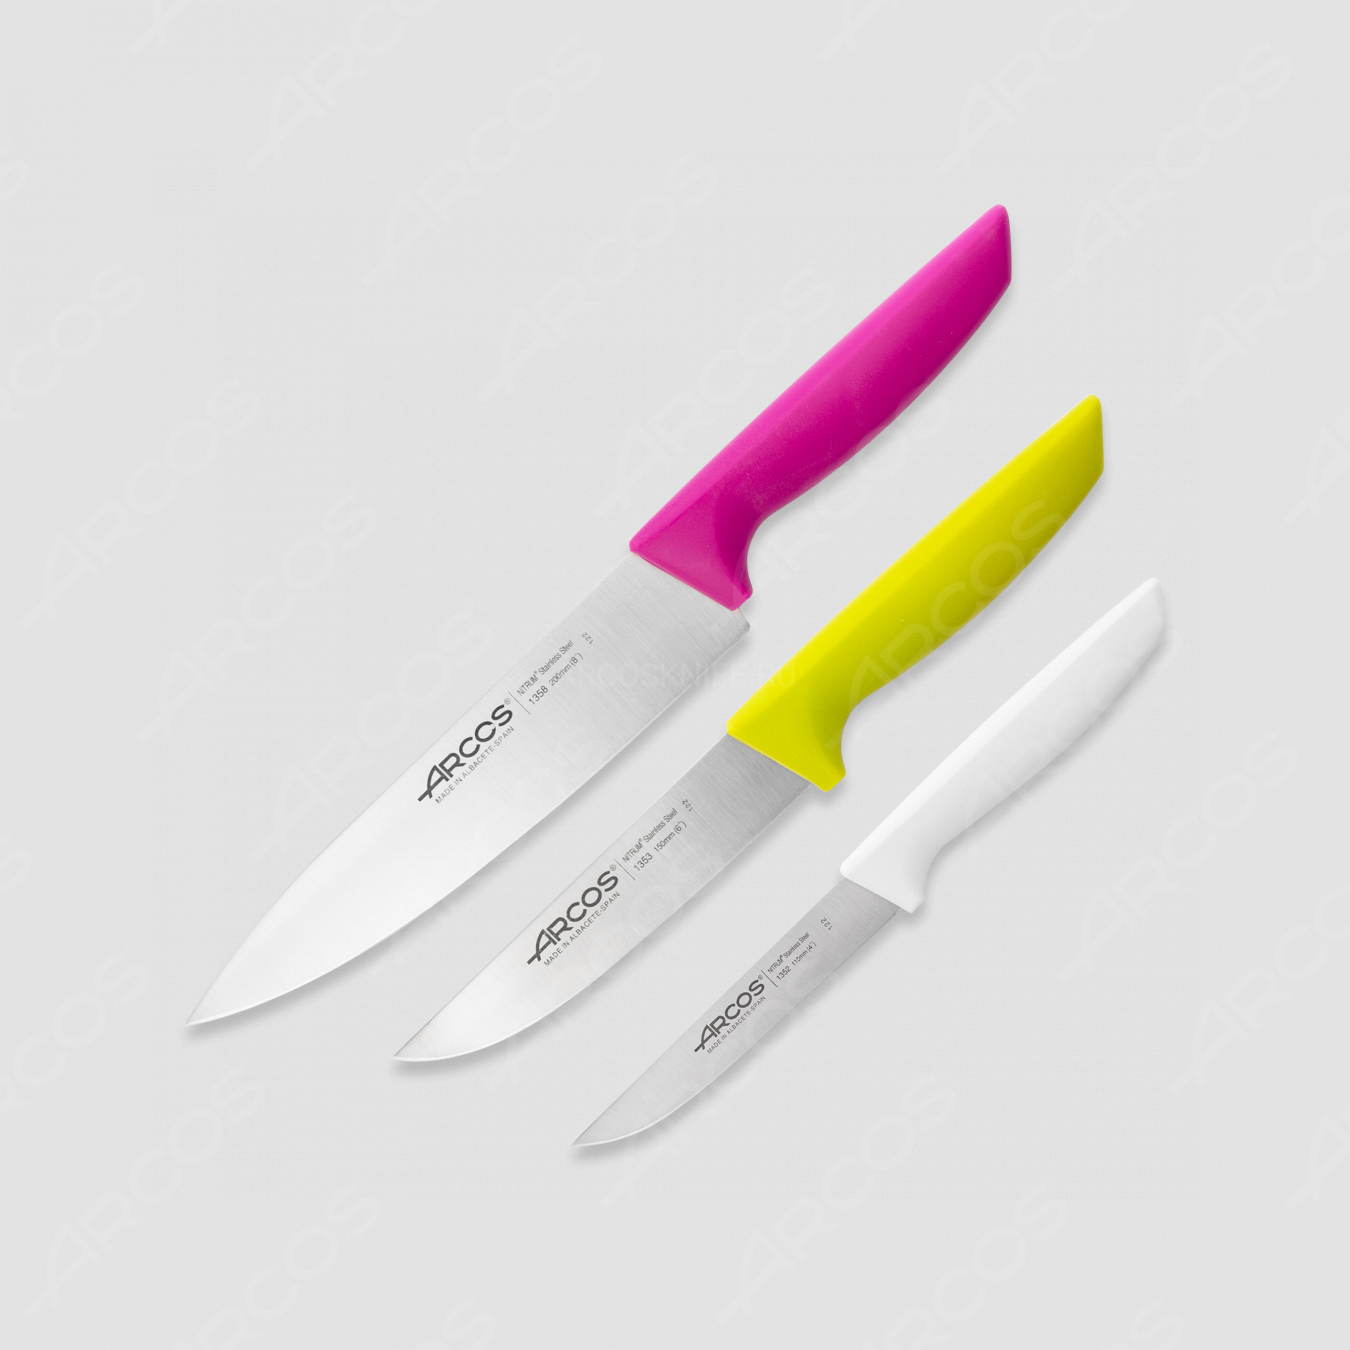 Набор ножей 3 шт. (11 см, 15 см, 20 см), с цветными ручками, упаковка-коробка, серия Niza, ARCOS, Испания